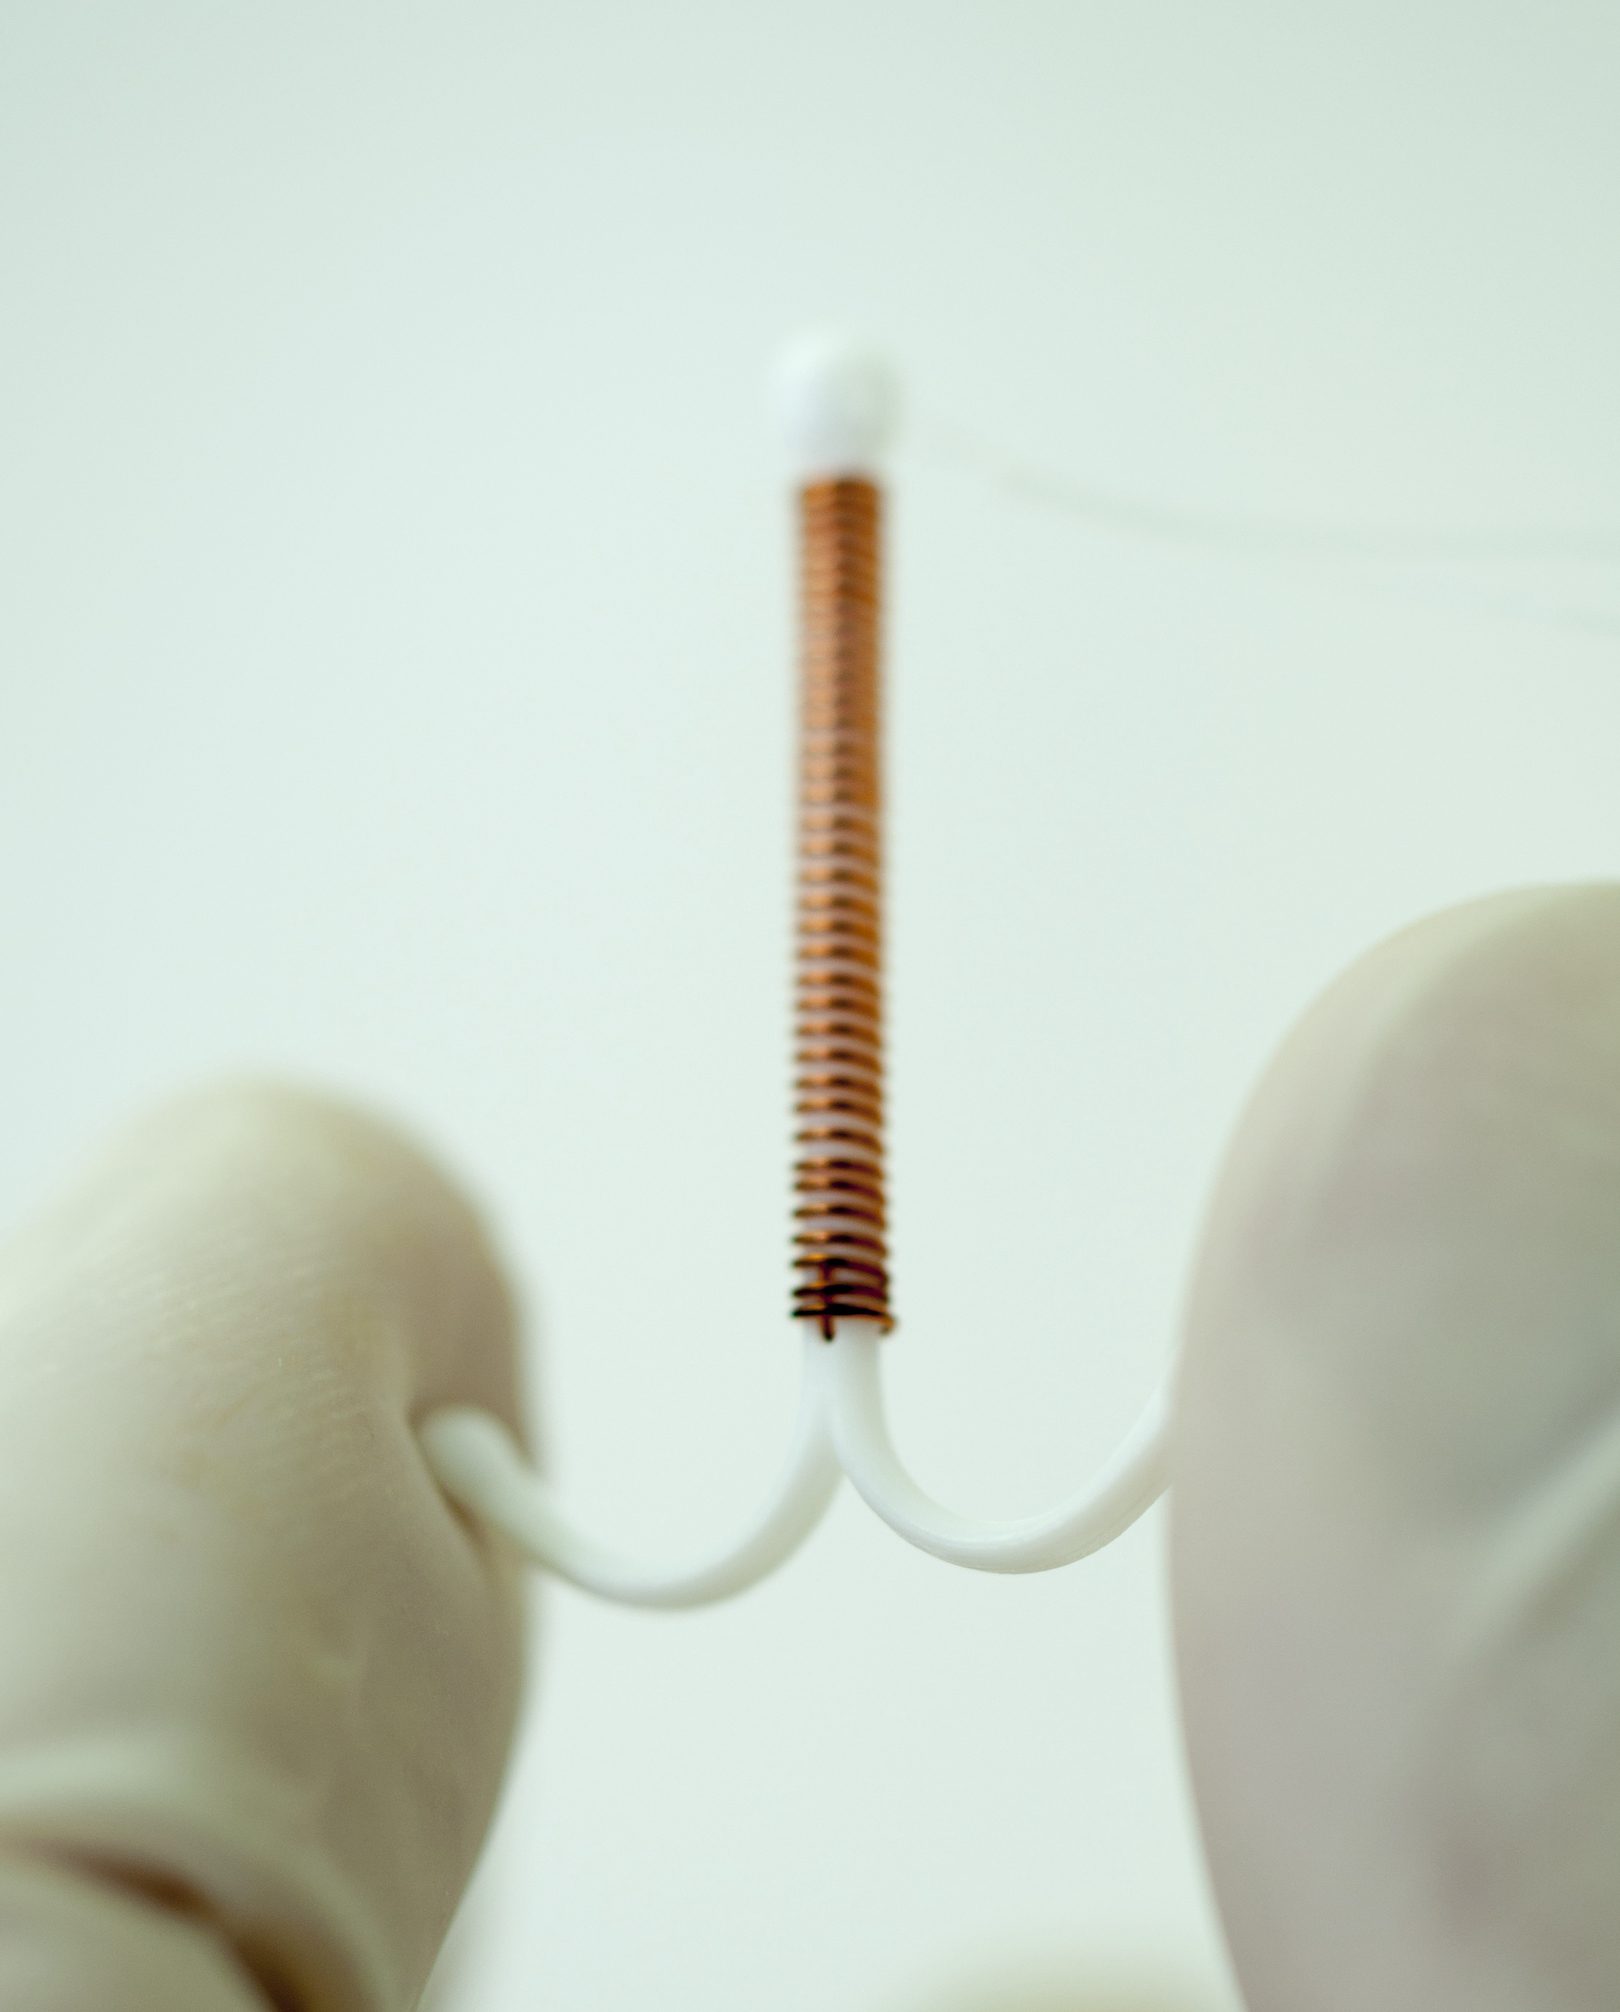 Copper IUD, Intrauterine device.